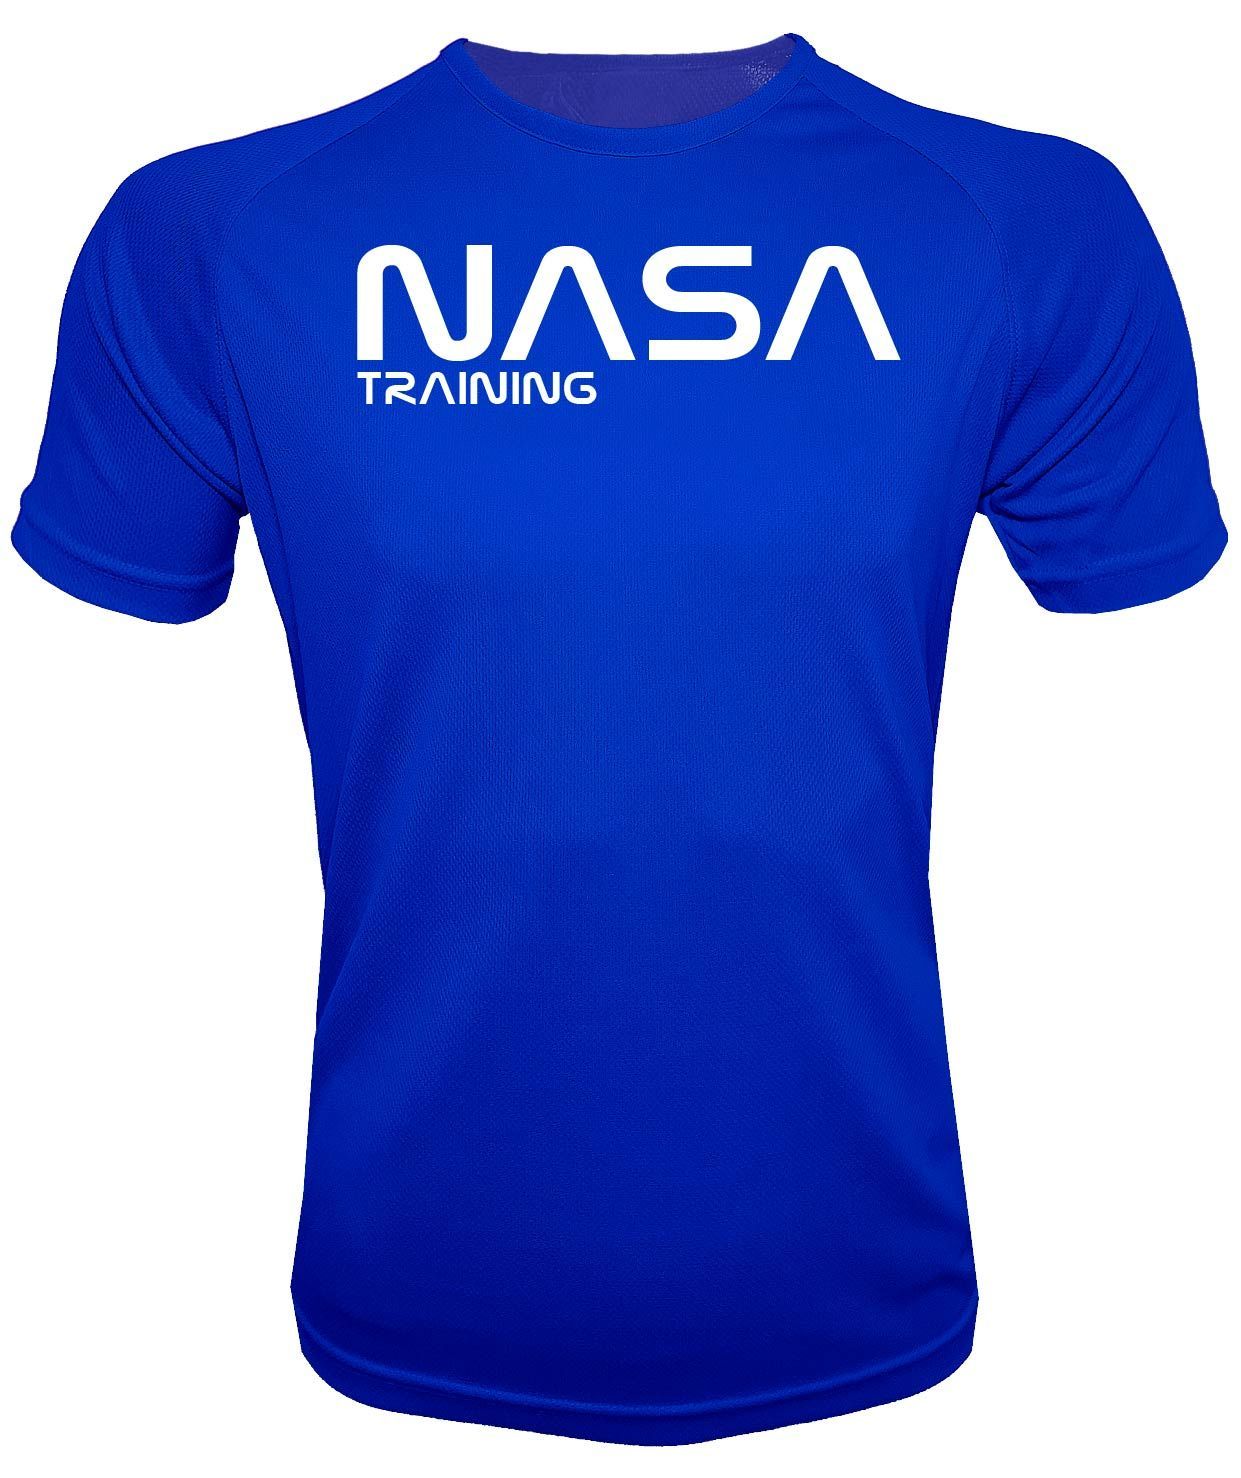 Camiseta deporte NASA